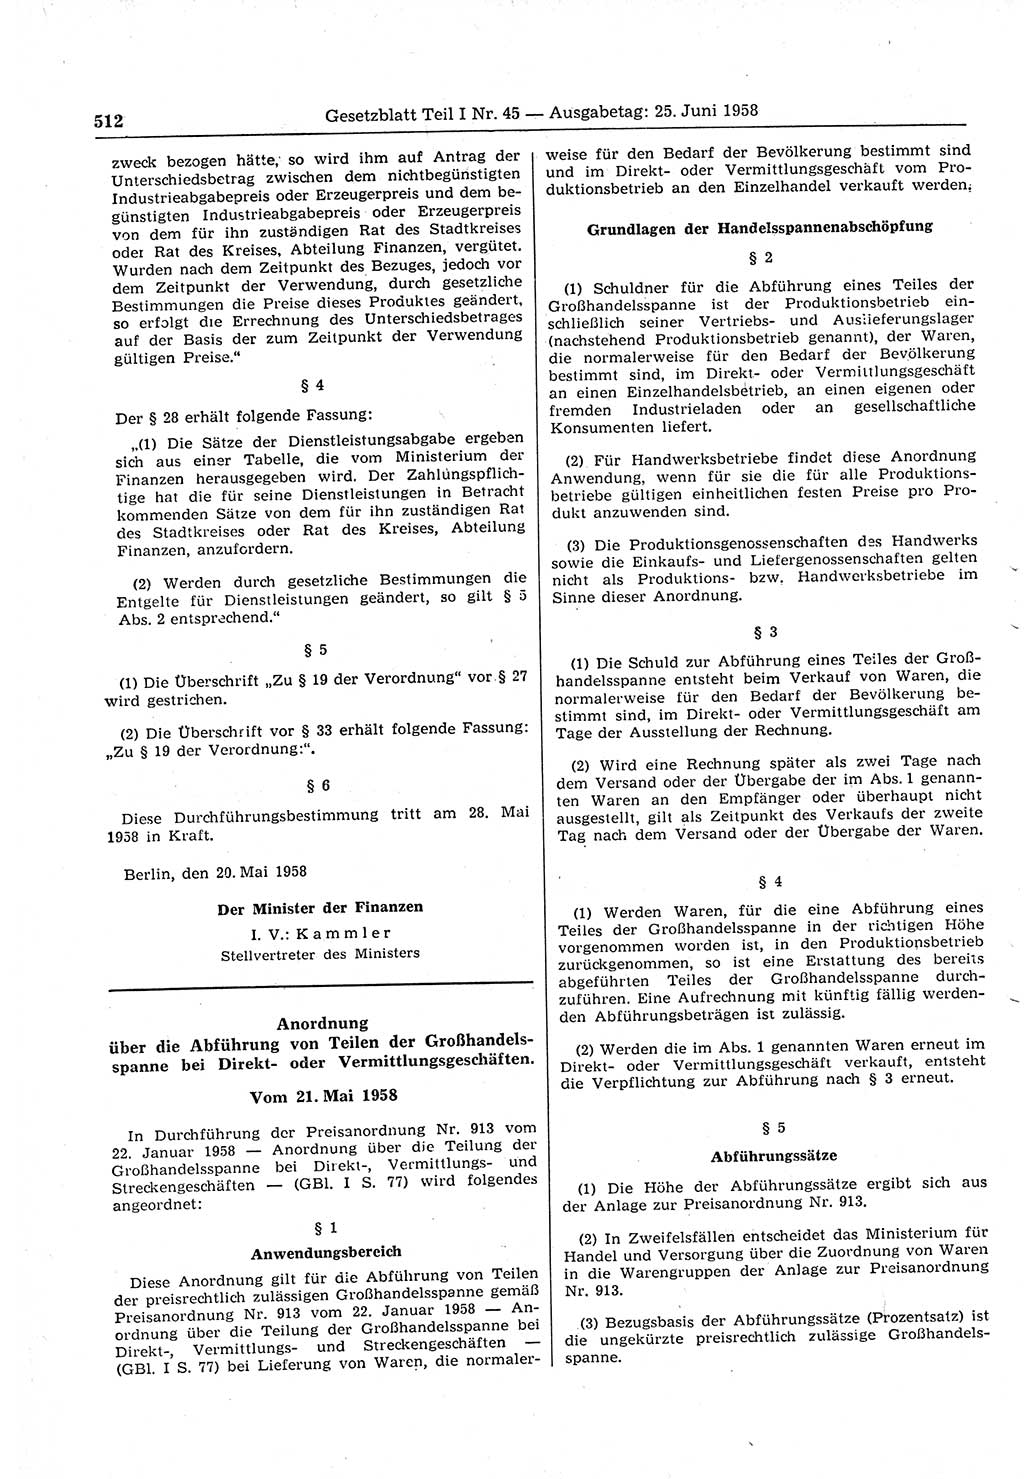 Gesetzblatt (GBl.) der Deutschen Demokratischen Republik (DDR) Teil Ⅰ 1958, Seite 512 (GBl. DDR Ⅰ 1958, S. 512)